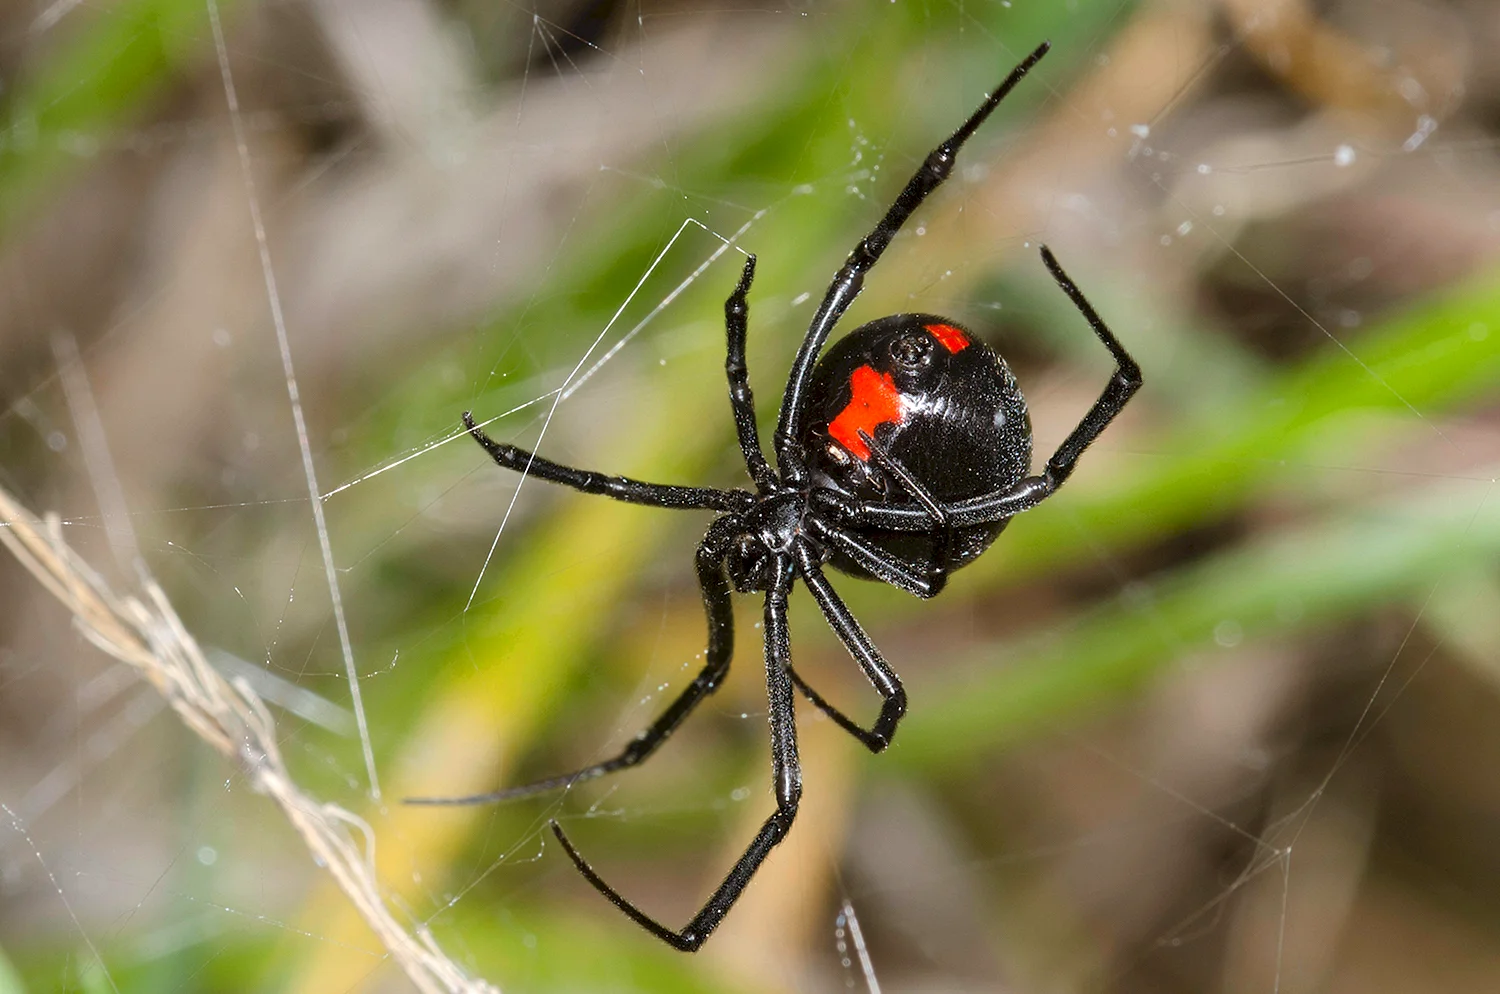 Черная вдова паук